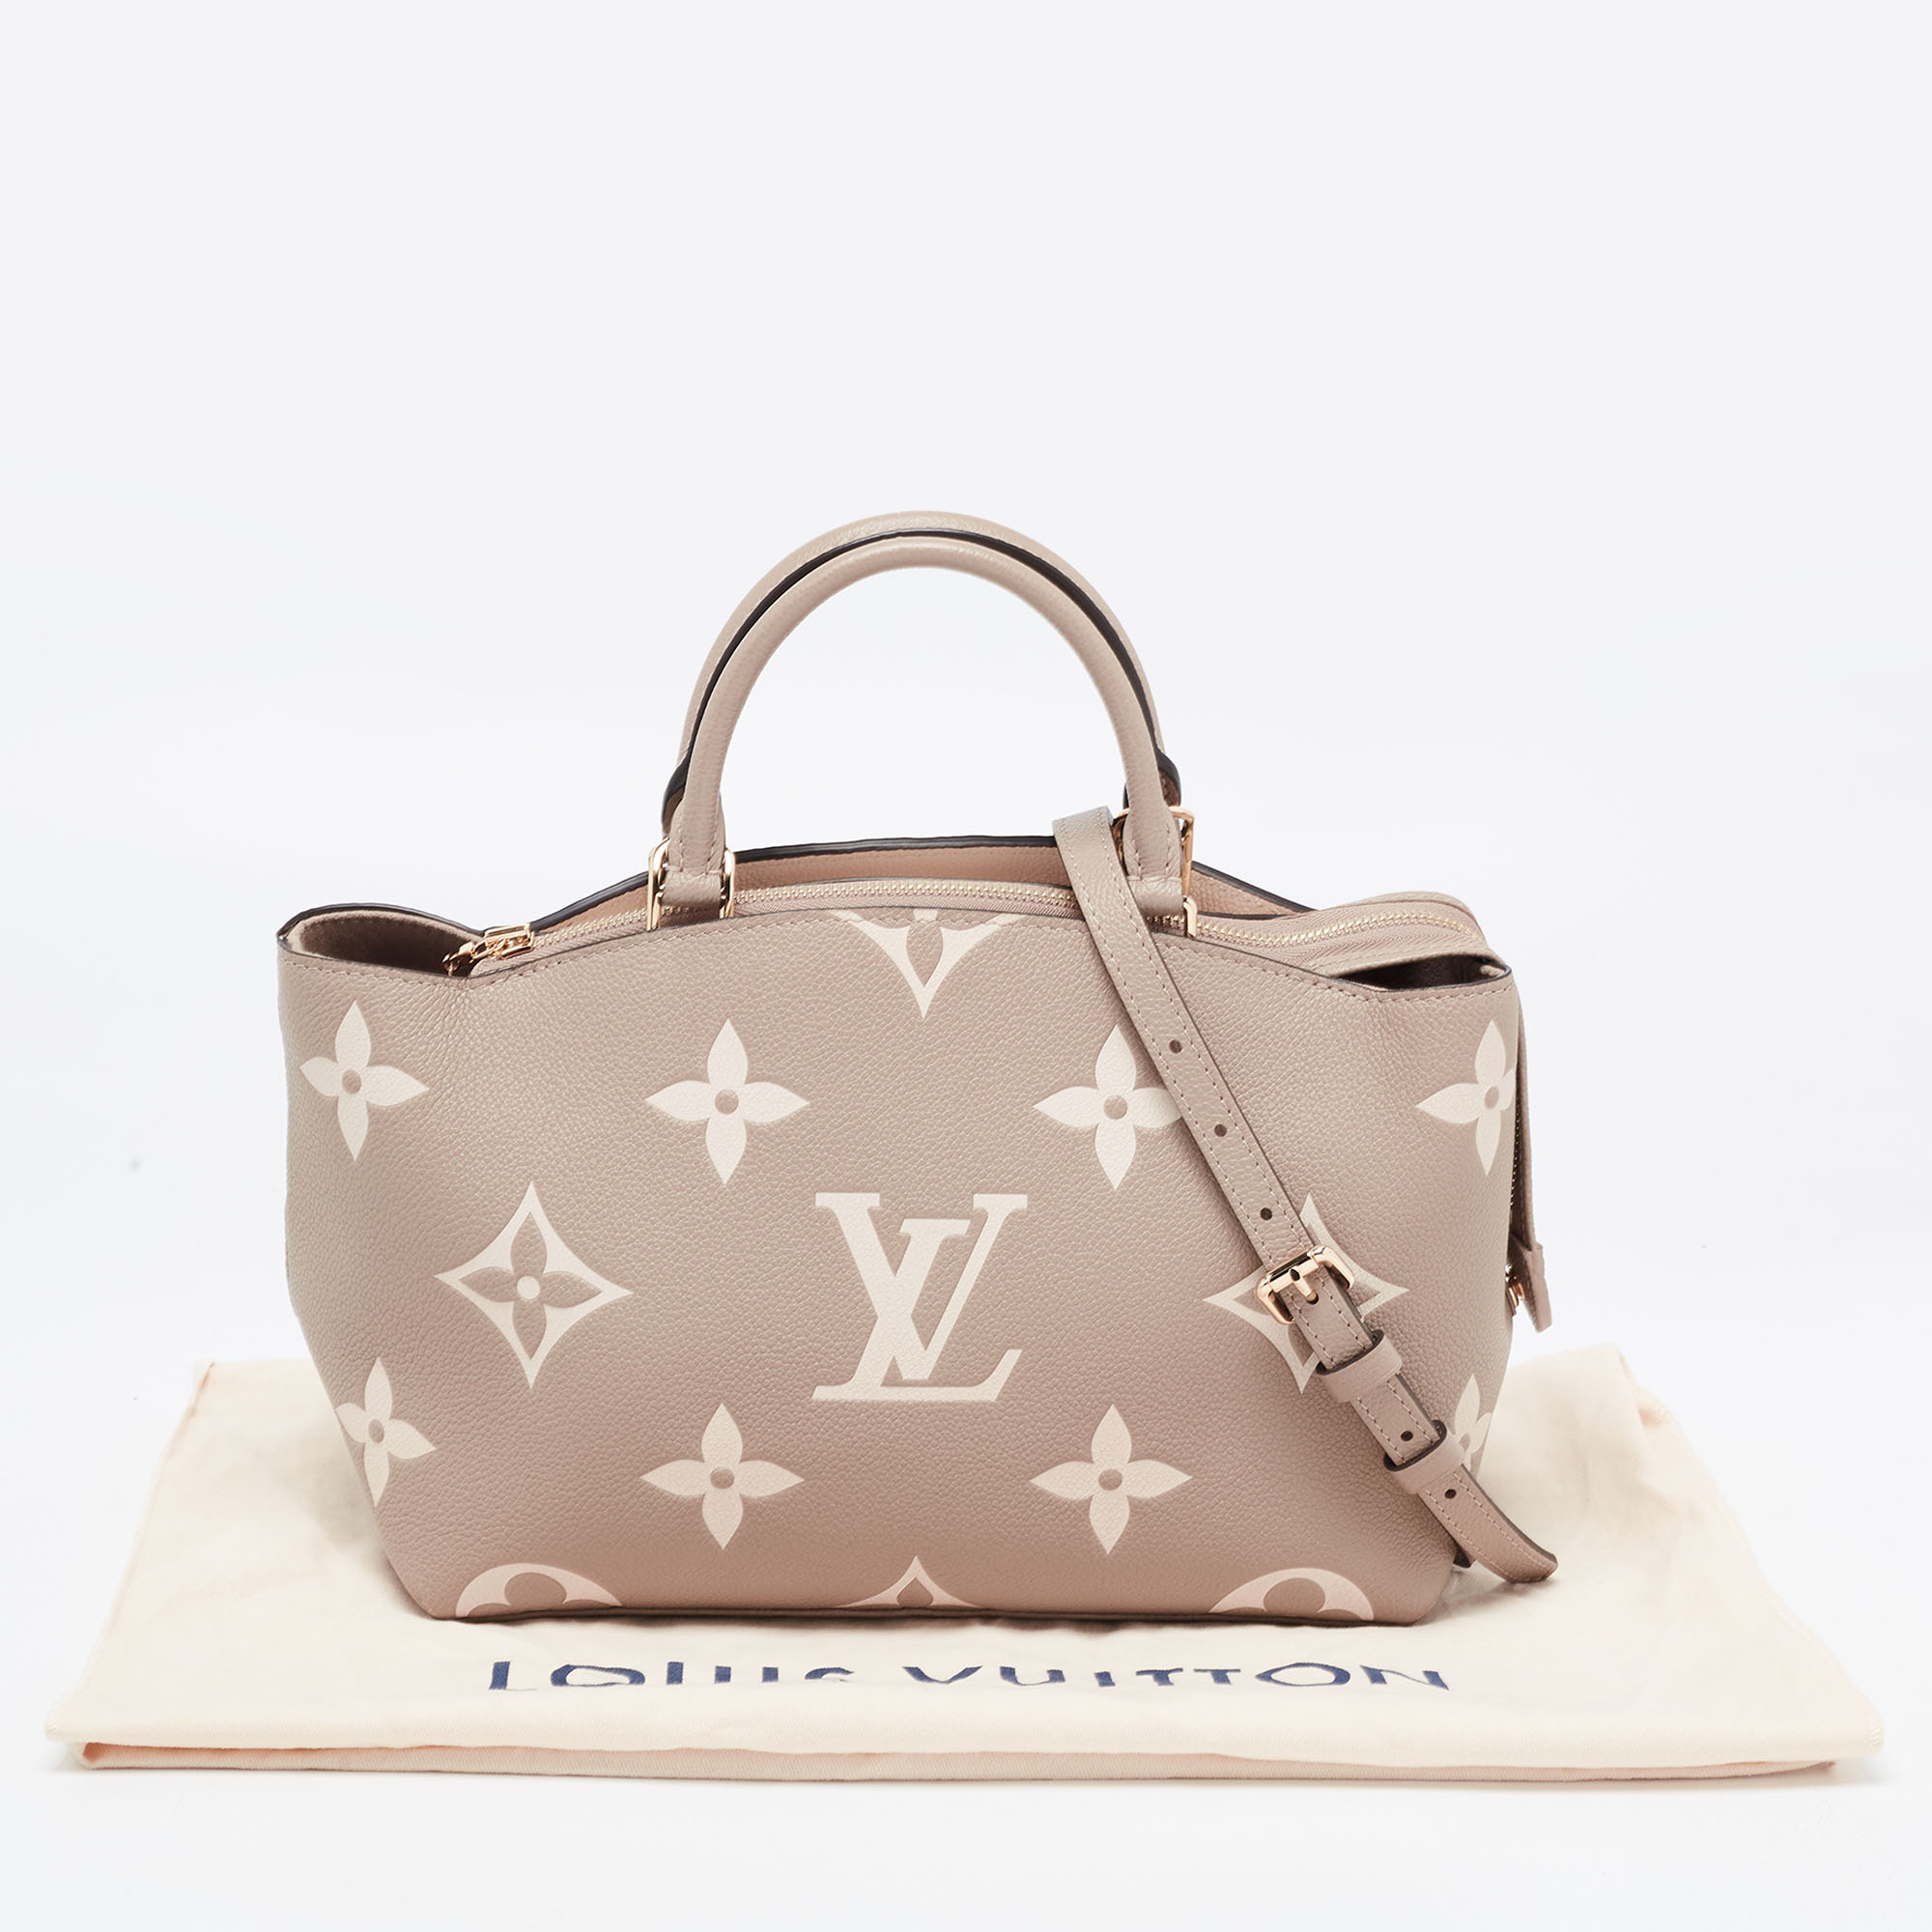 Louis Vuitton Bicolor Monogram Empriente Leather Patit Palais Bag